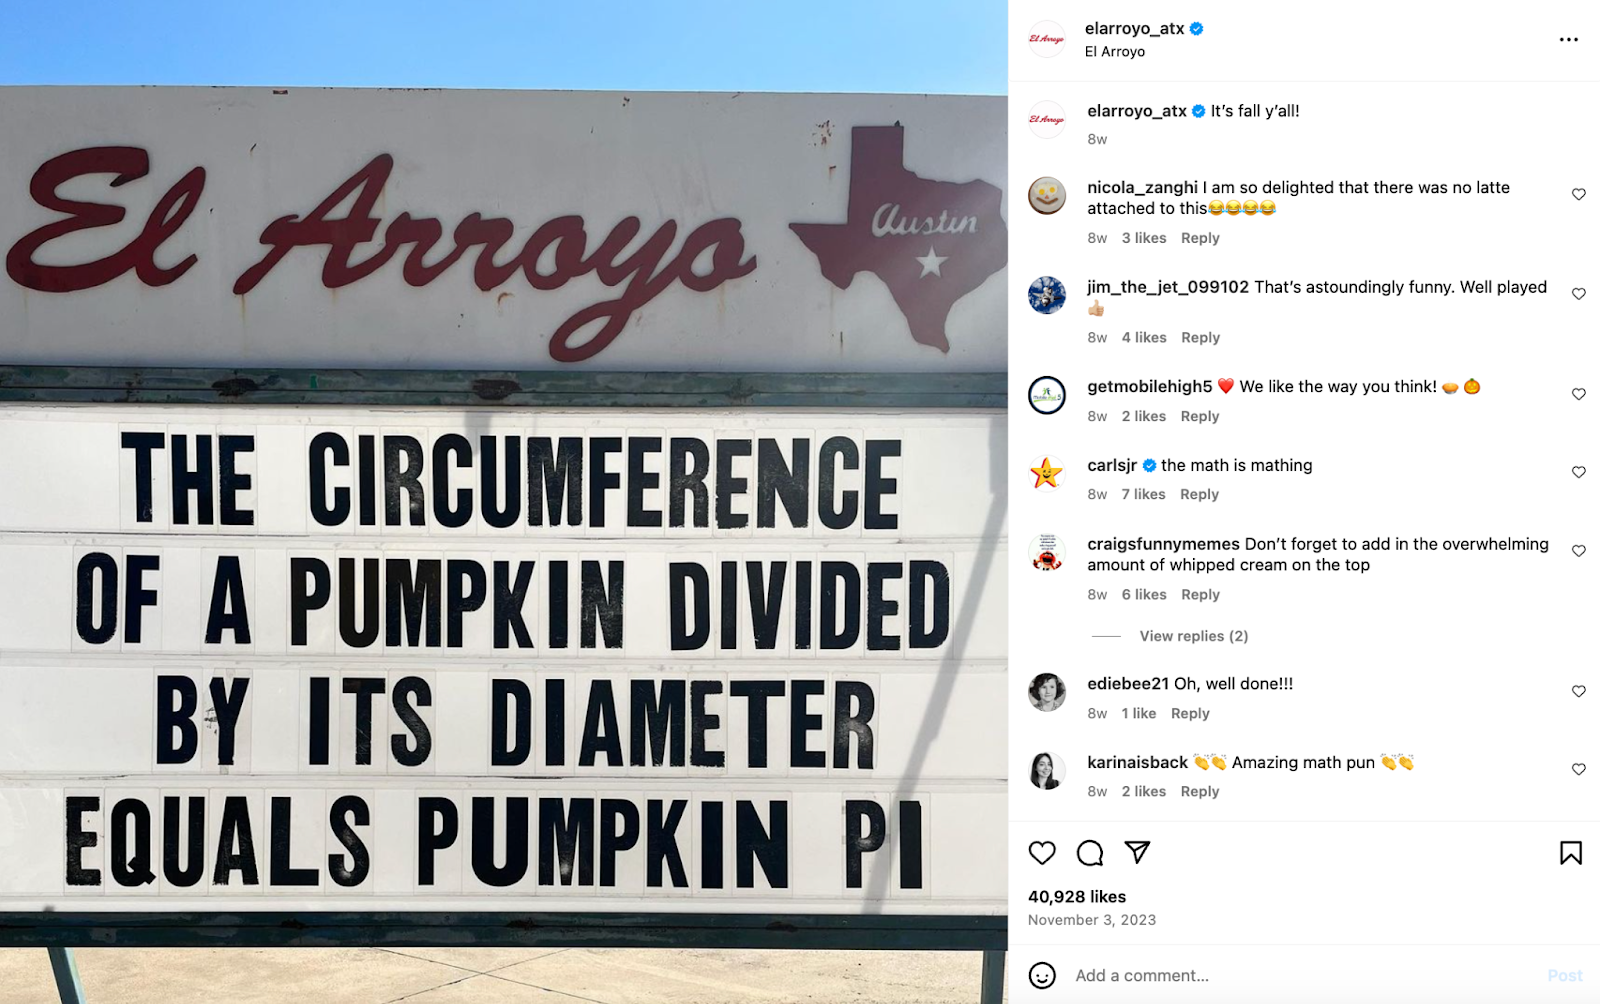 Kreative Marketingideen für Restaurants: Das in Austin ansässige Restaurant El Arroyo ist berühmt für sein Festzeltschild mit frechen Sprüchen und Witzen.